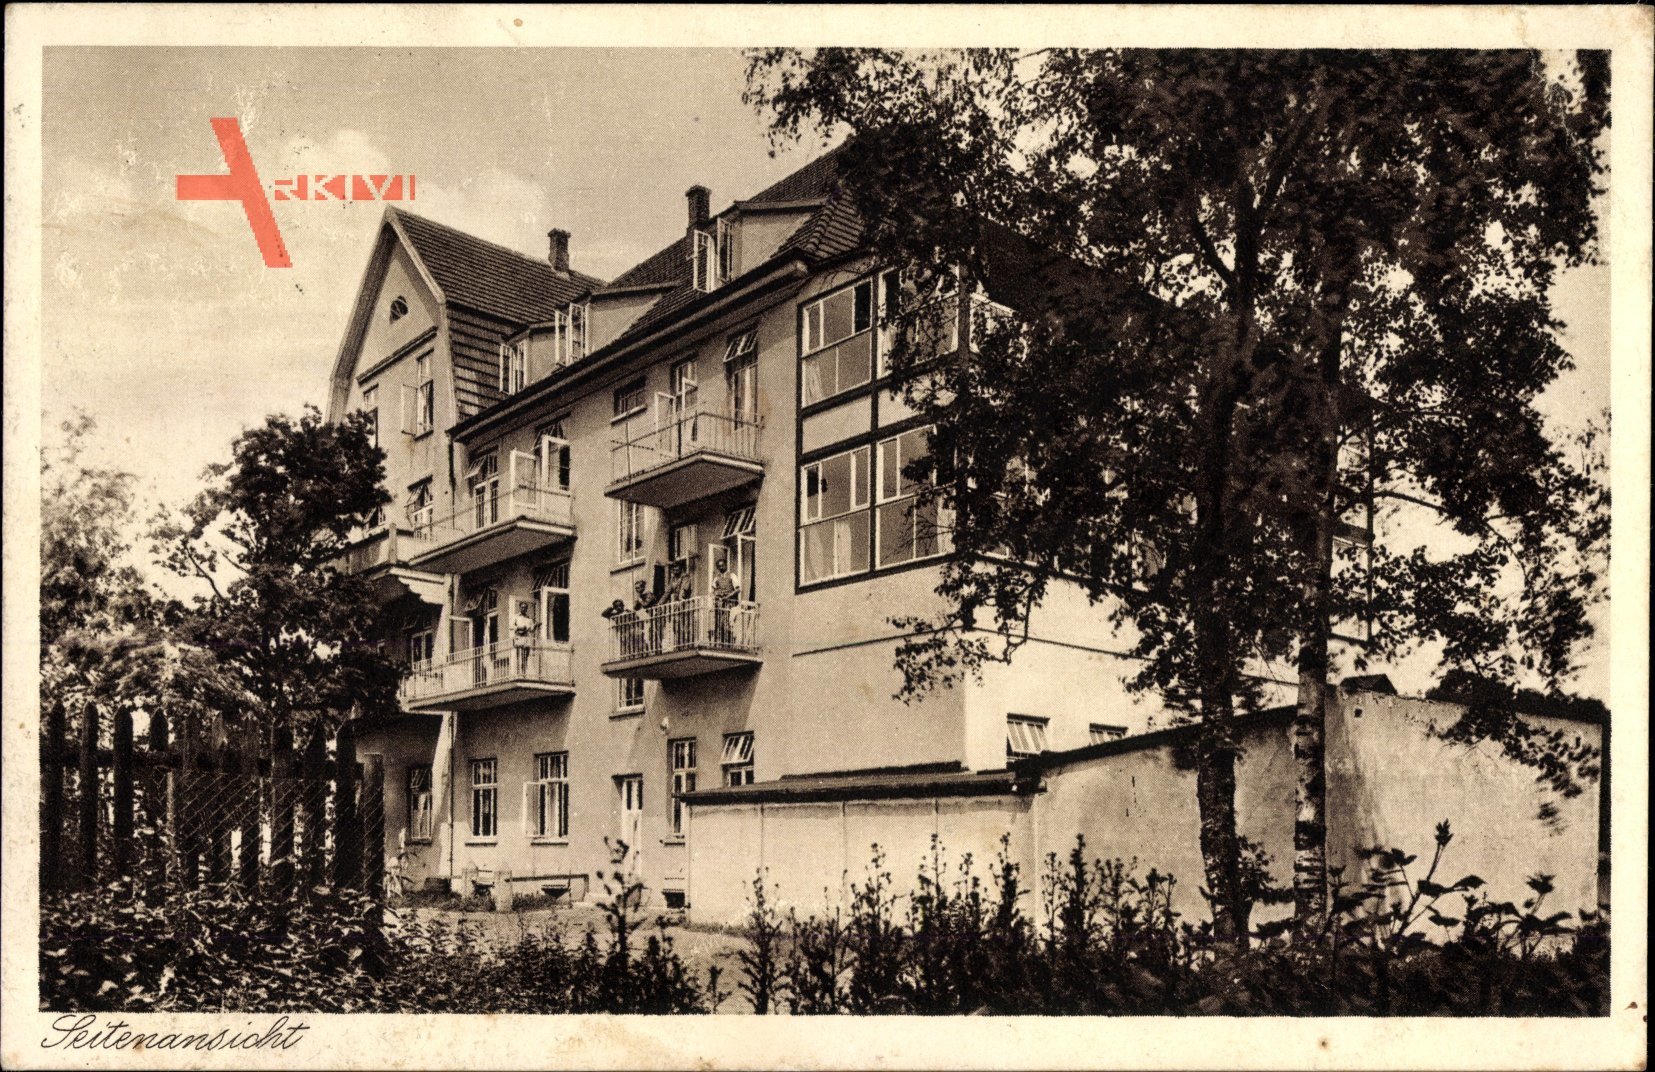 Graal Müritz im Kreis Rostock, Kindererholungsheim der Luftwaffe, Haus Lindenhof, Seitenansicht